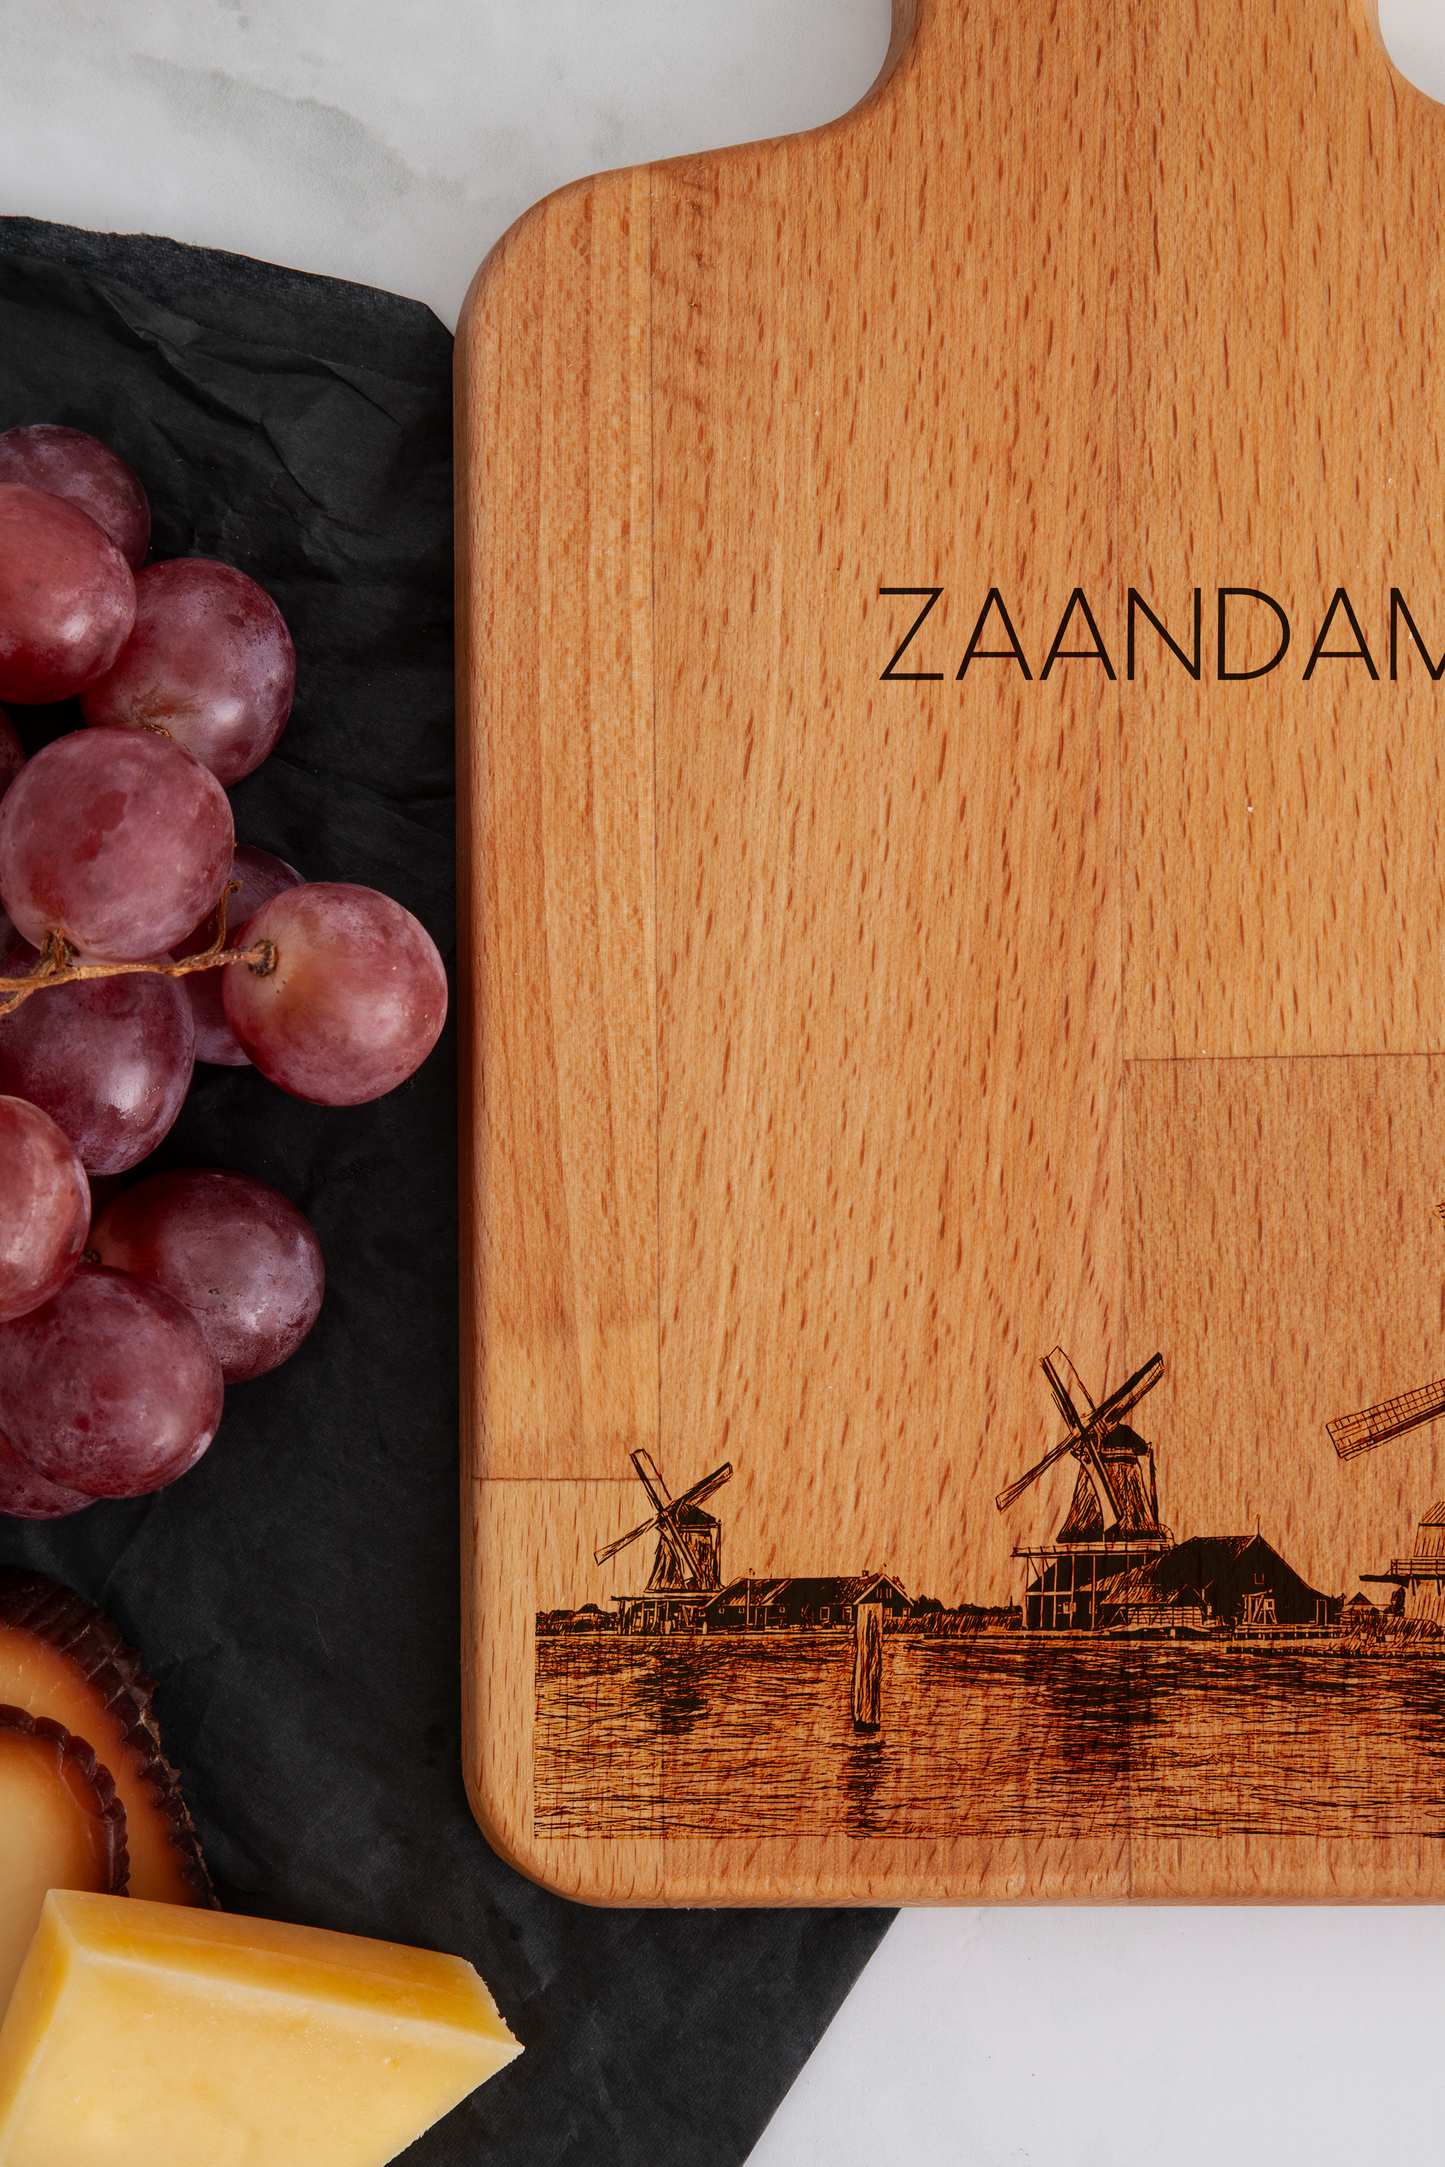 Zaandam, Zaanse Schans, cheese board, close-up